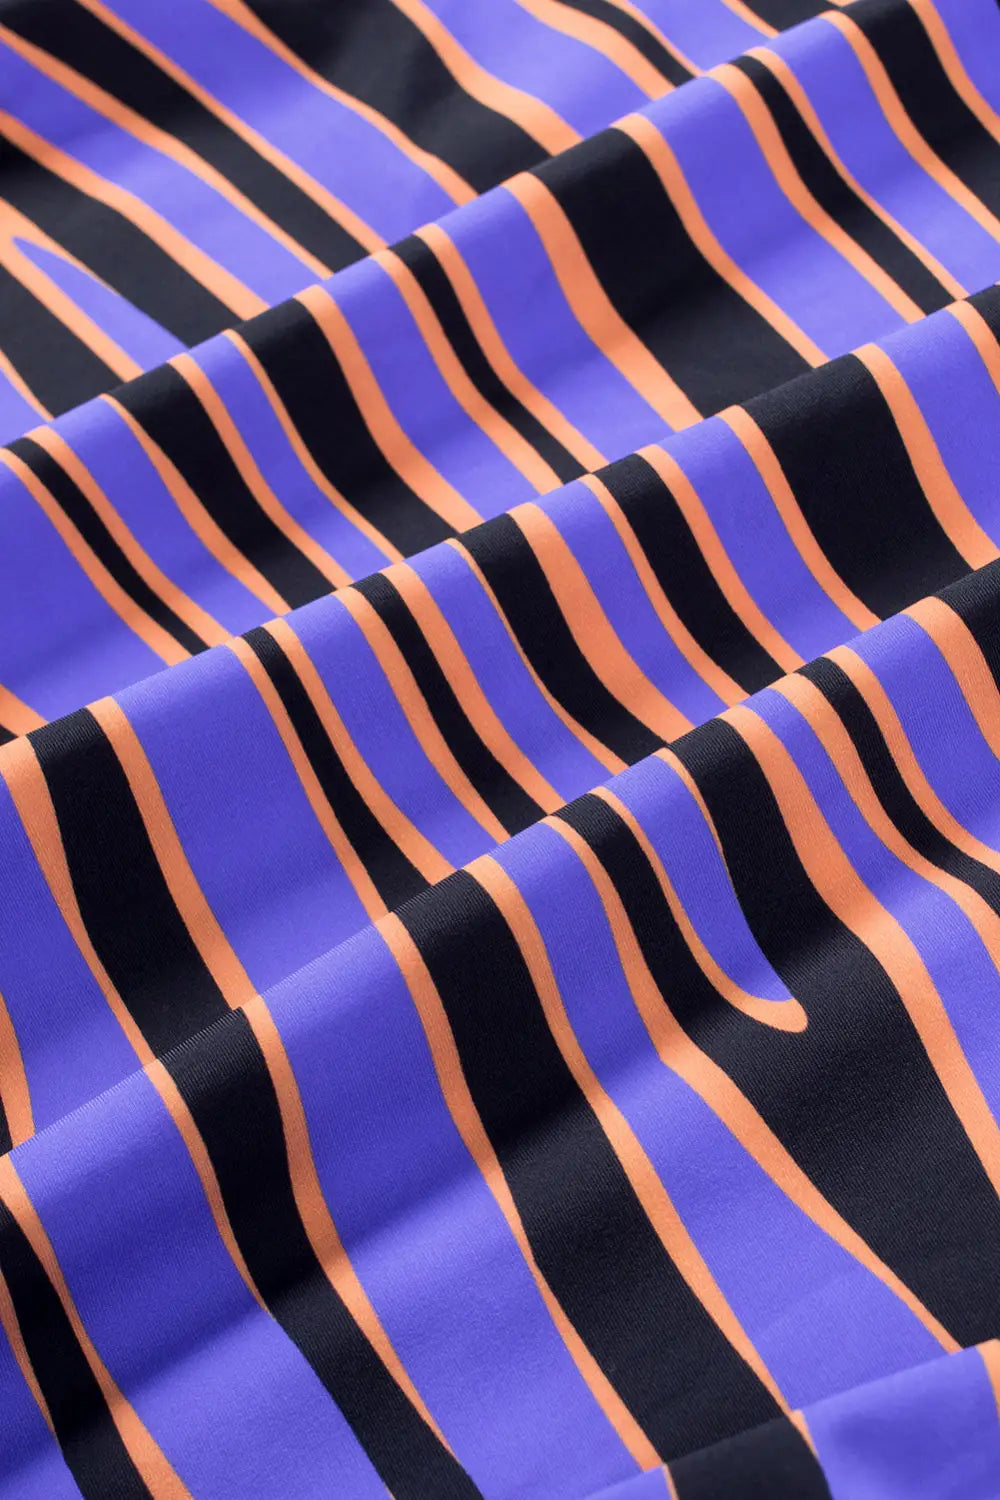 Purple animal stripes lacing tankini swimsuit - tankinis